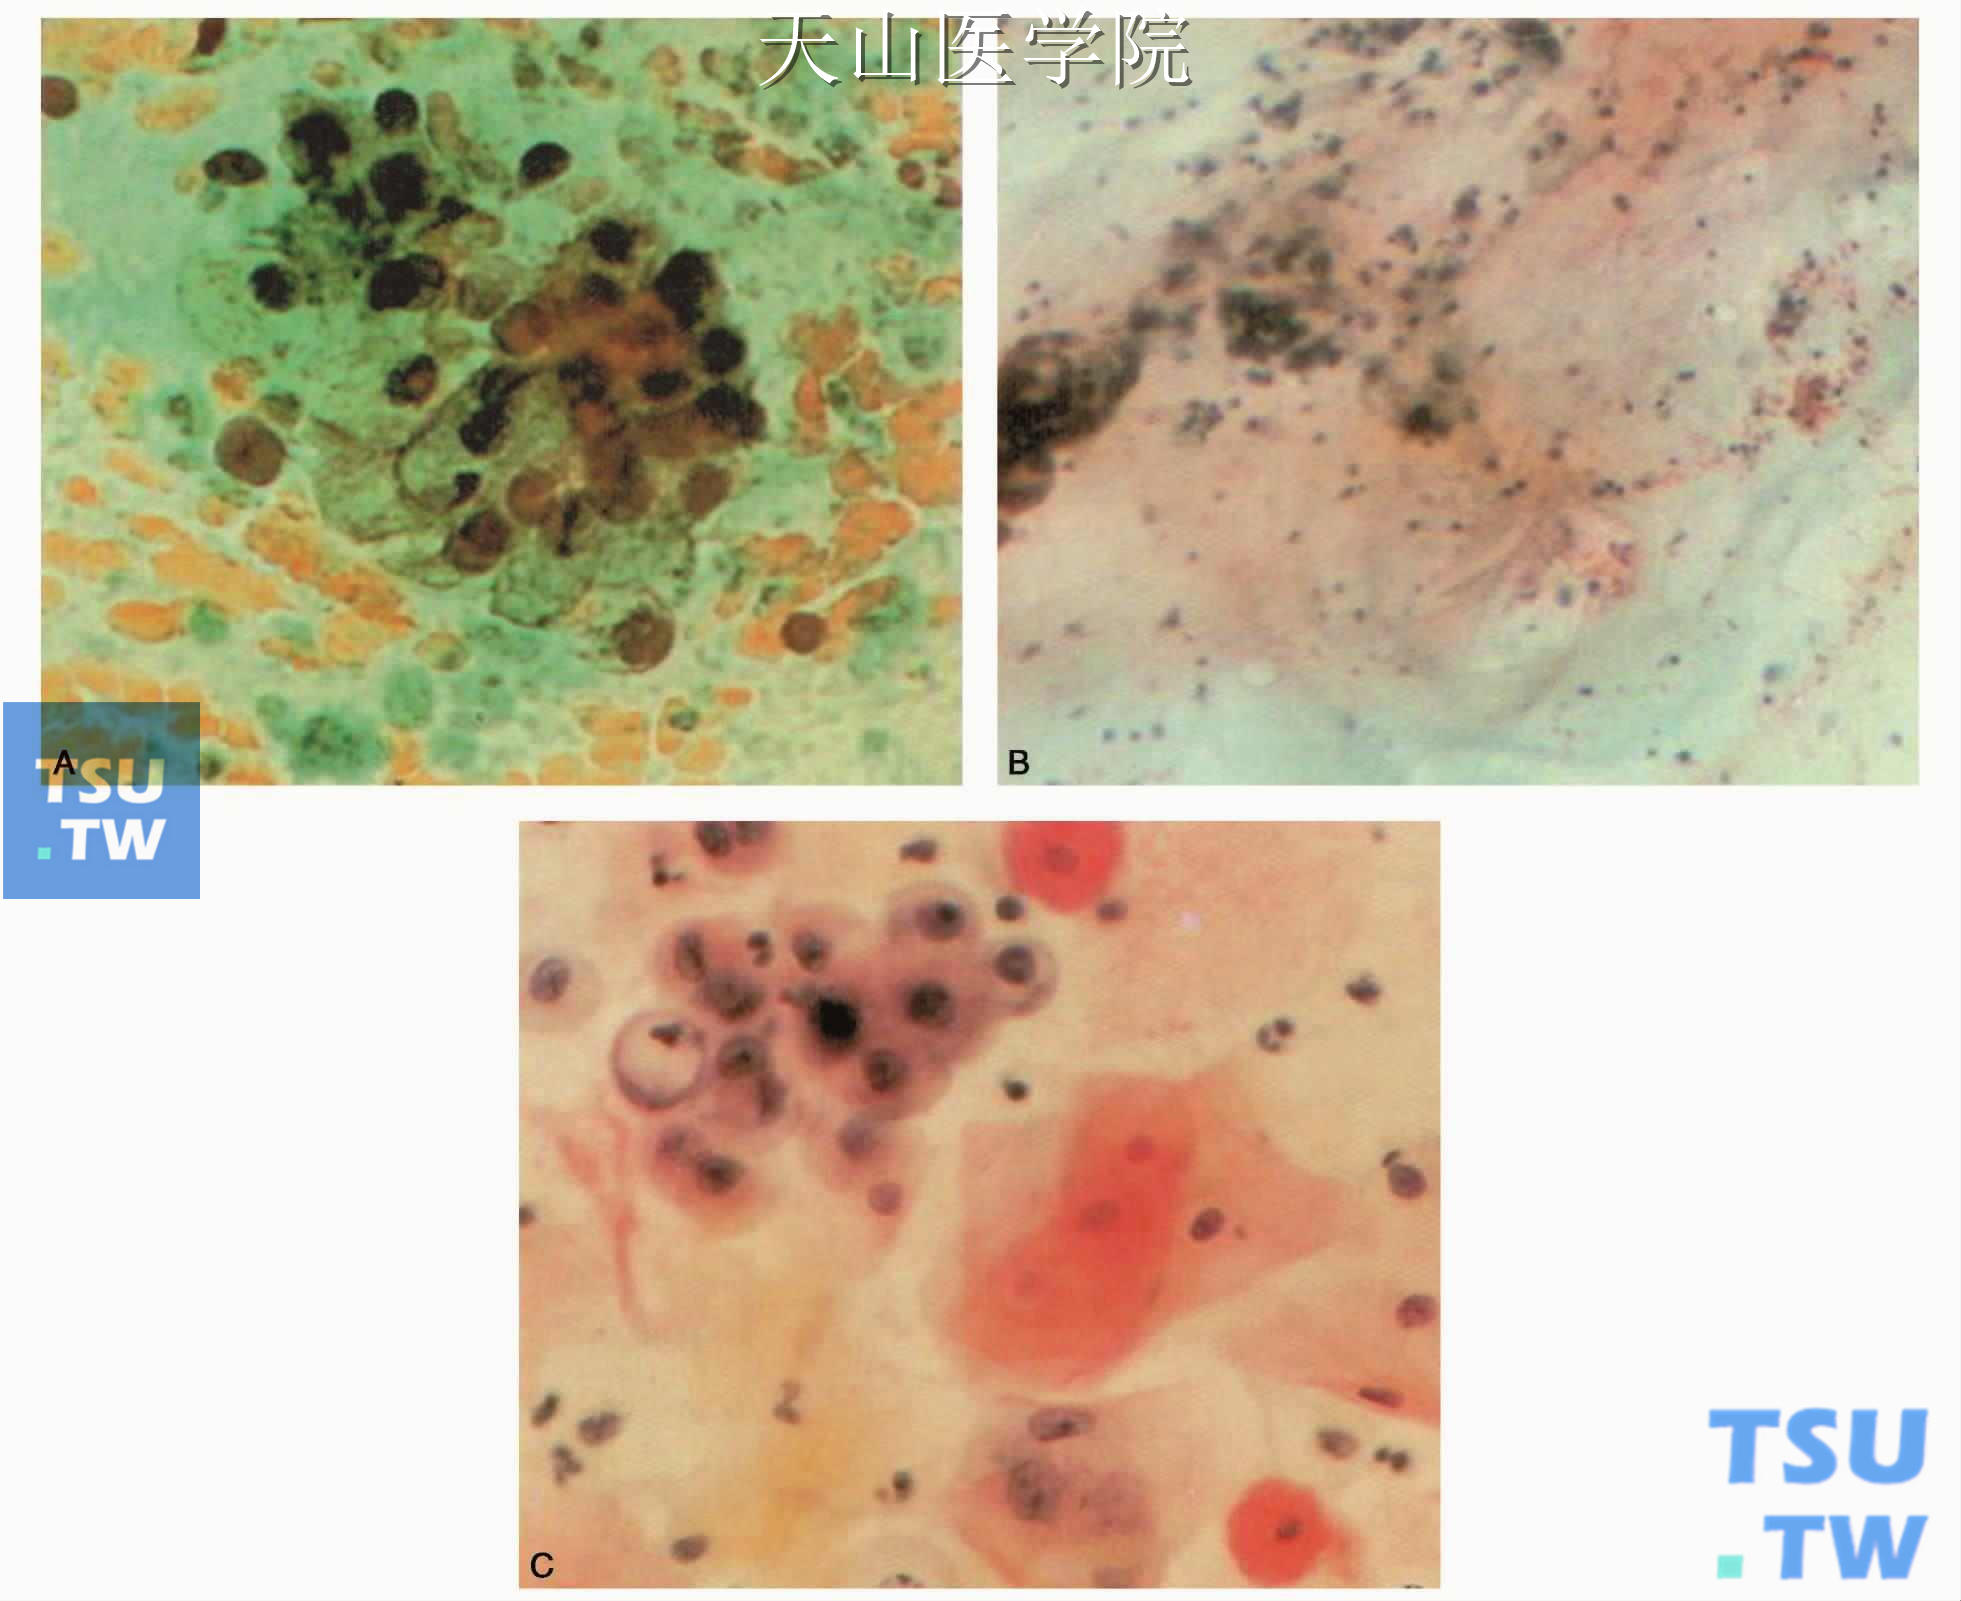 黏液表皮样癌：A.黏液细胞和点滴状黏液；B.云雾状黏液；C.表皮样细胞和黏液细胞，后者核周透明区为黏液